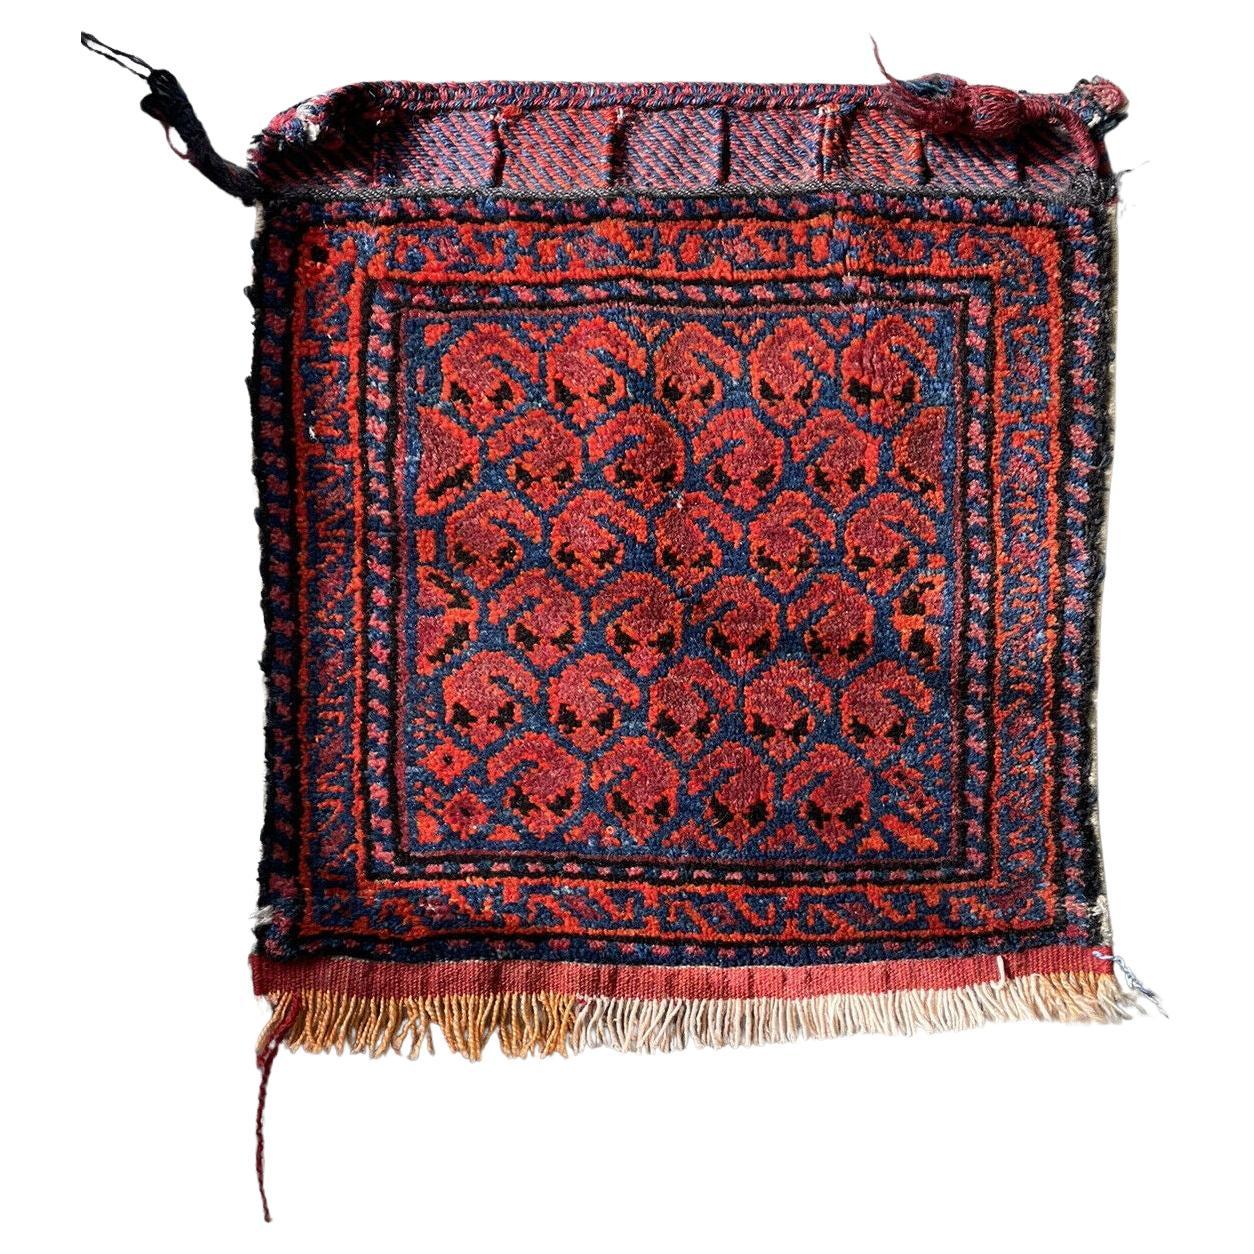 Face de sac Shiraz persane de collection faite à la main 1,3' x 1,5', années 1900 - 1N21